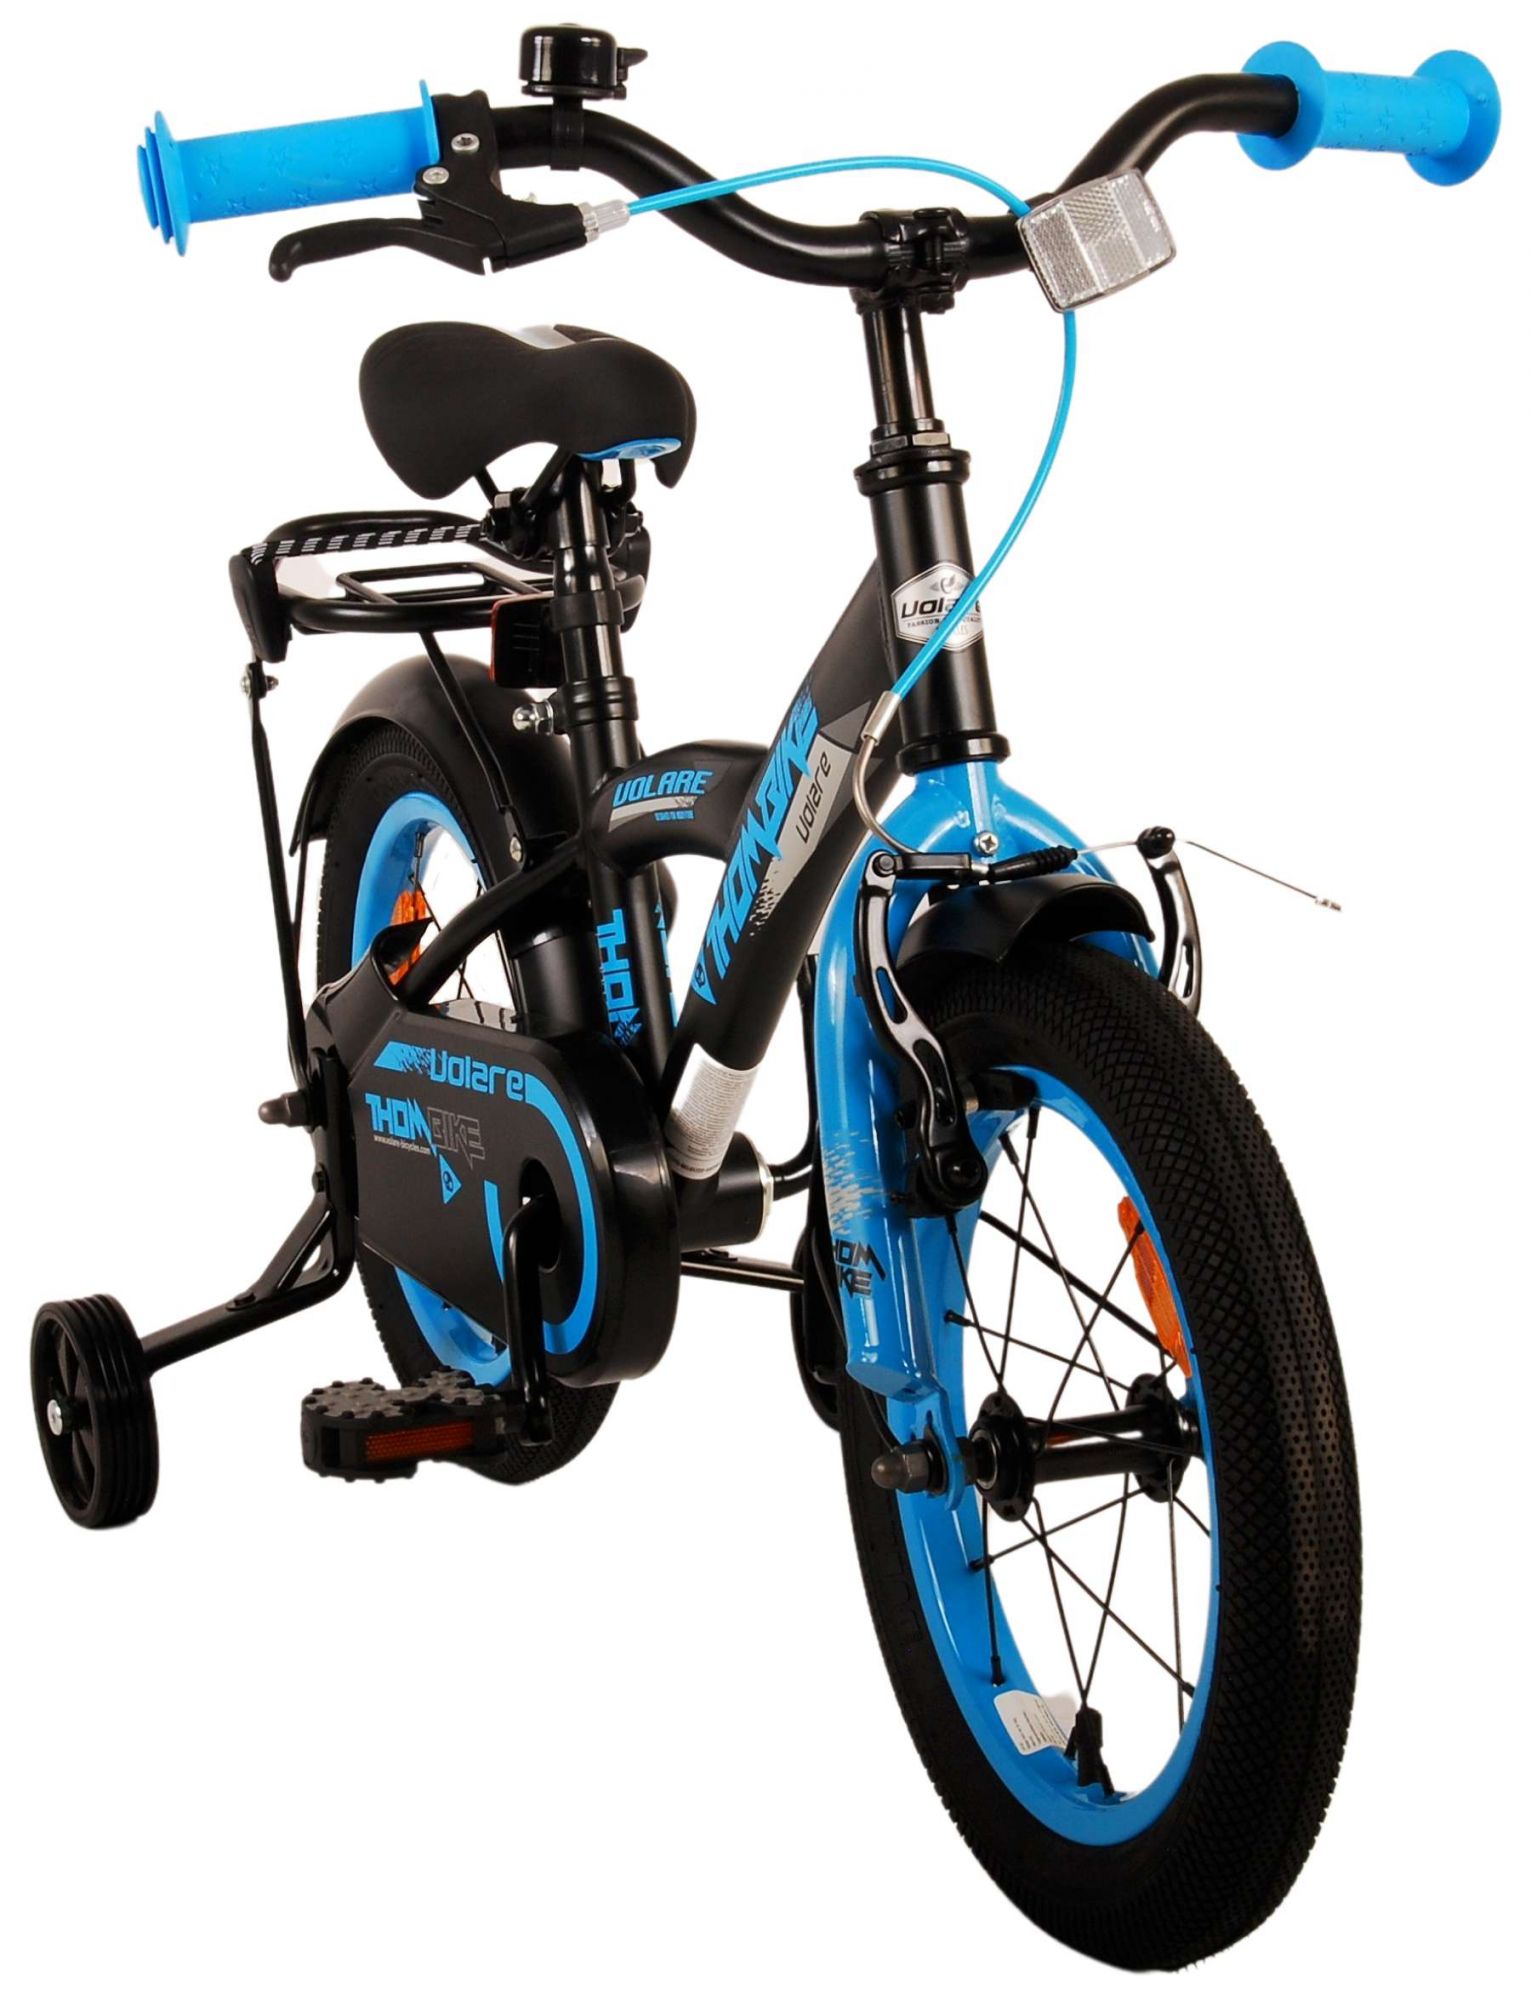 Kinderfahrrad Thombike für Jungen 14 Zoll Kinderrad in Schwarz Blau